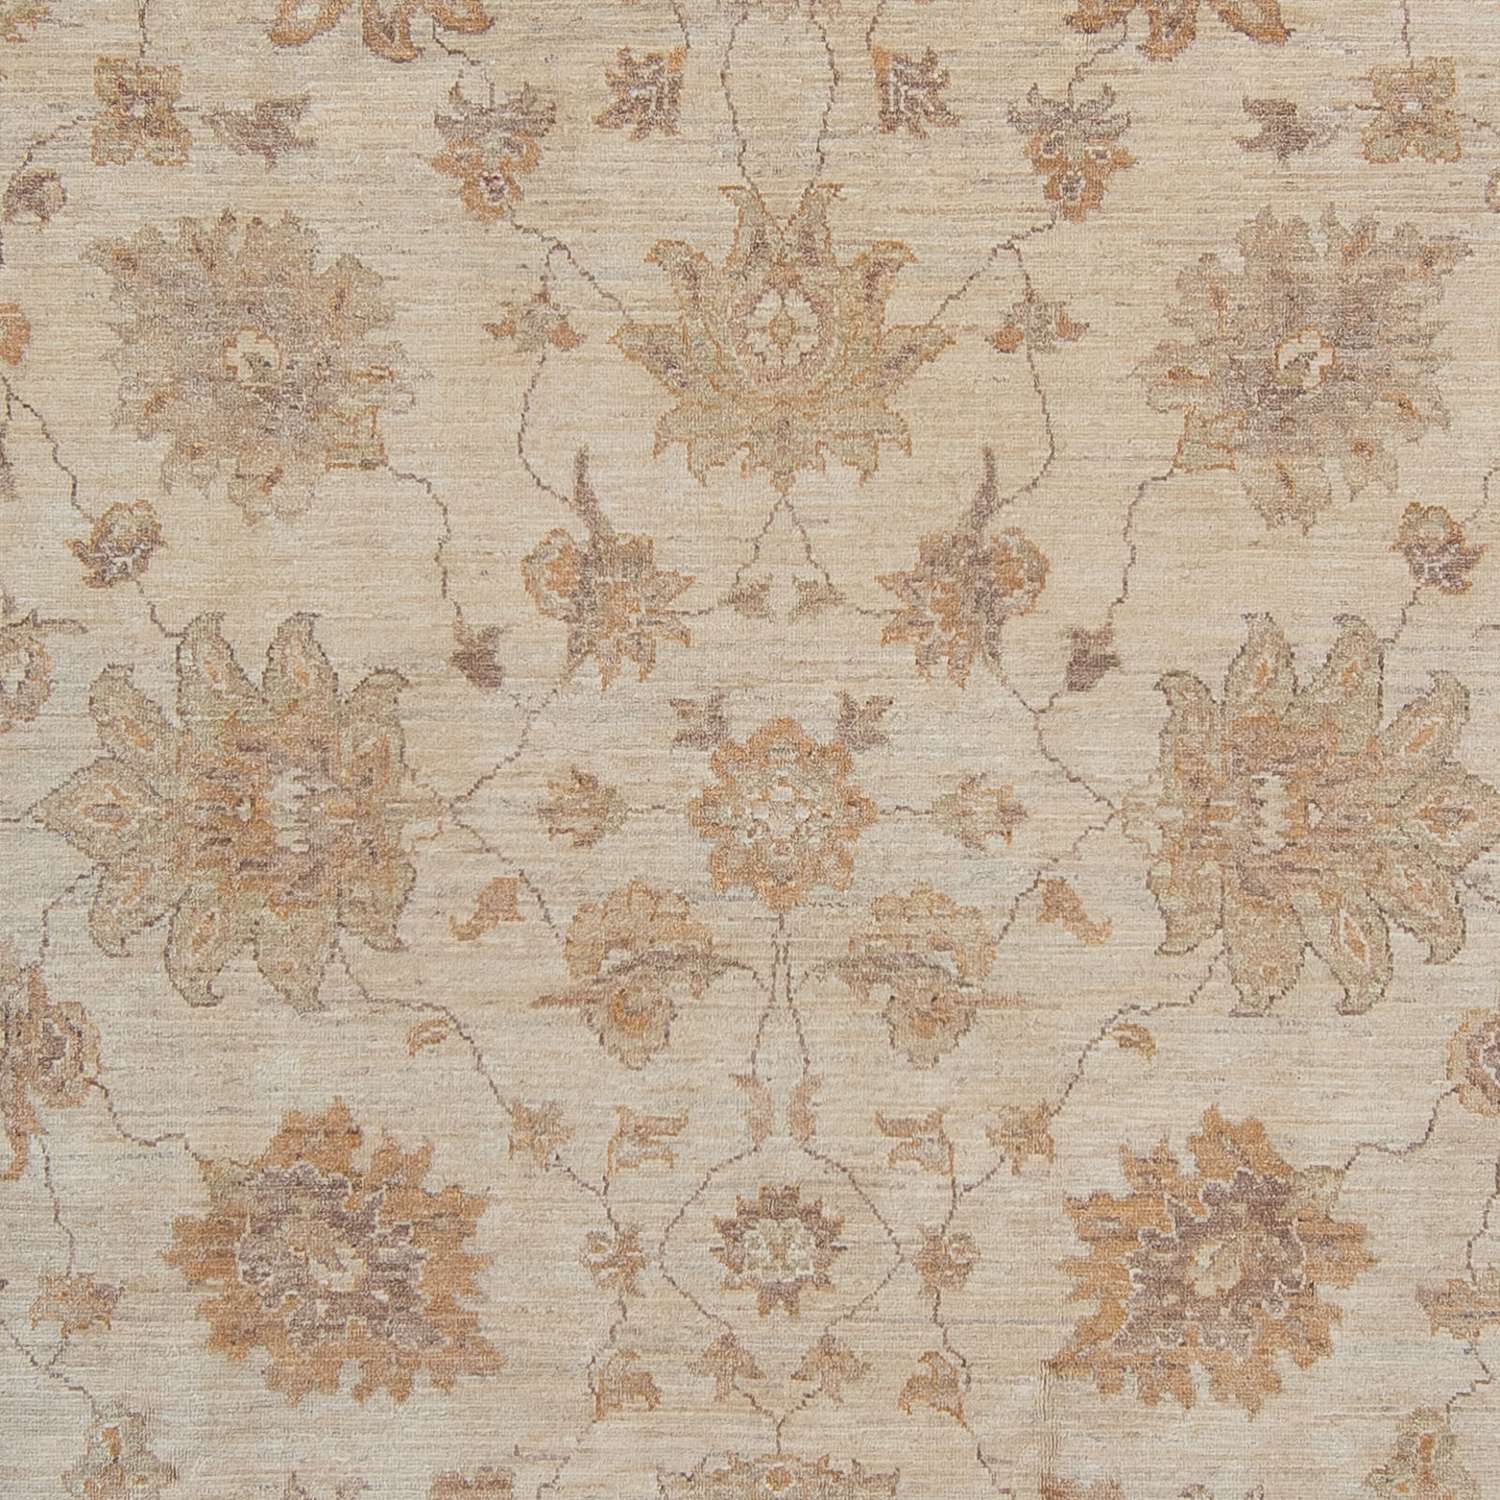 Ziegler Carpet - 337 x 249 cm - ljusbeige